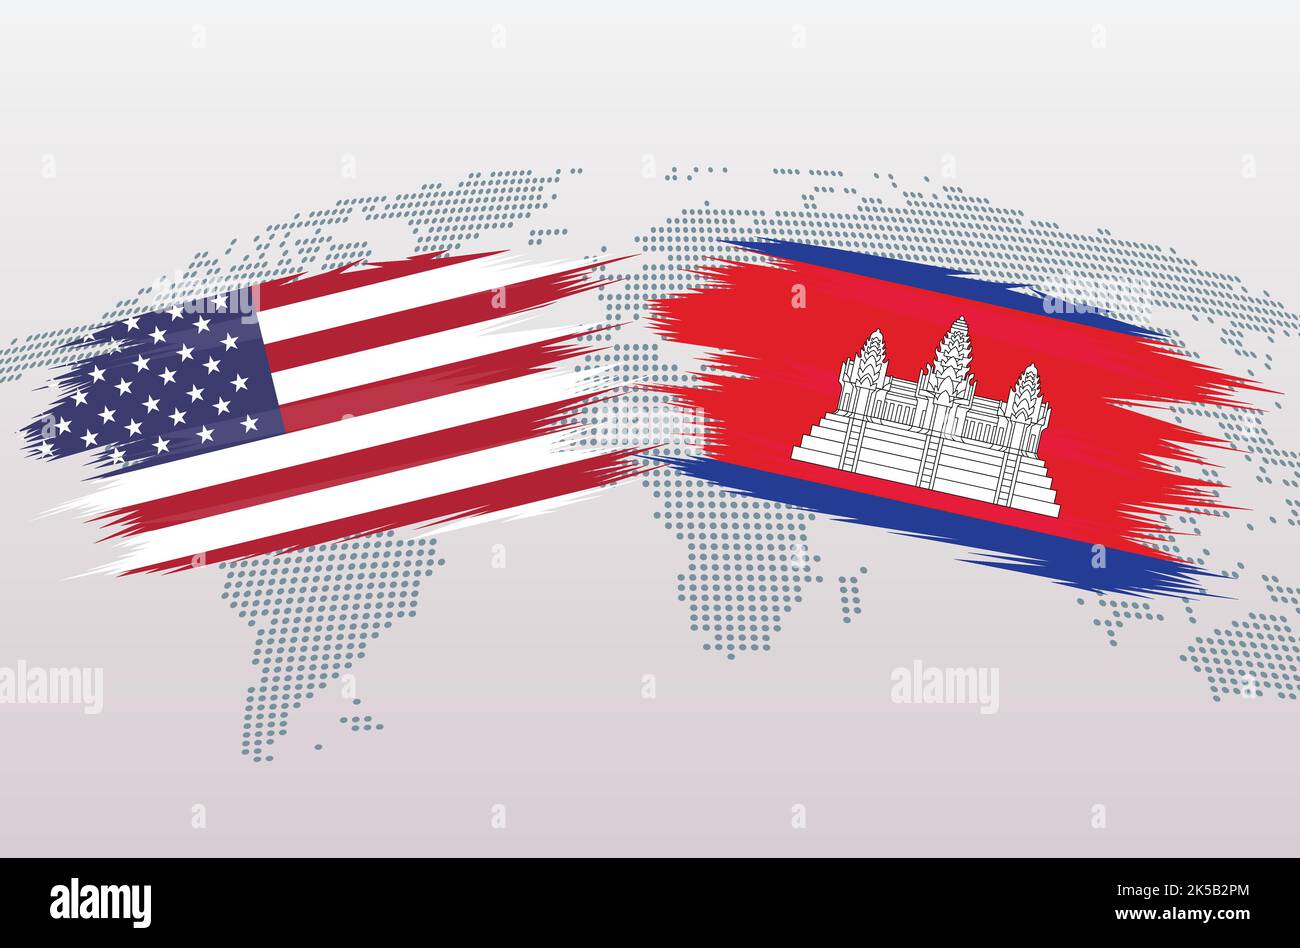 USA gegen Combodia-Flaggen. Die Vereinigten Staaten von Amerika gegen die kombodianischen Flaggen, isoliert auf grauem Hintergrund der Weltkarte. Vektorgrafik. Stock Vektor